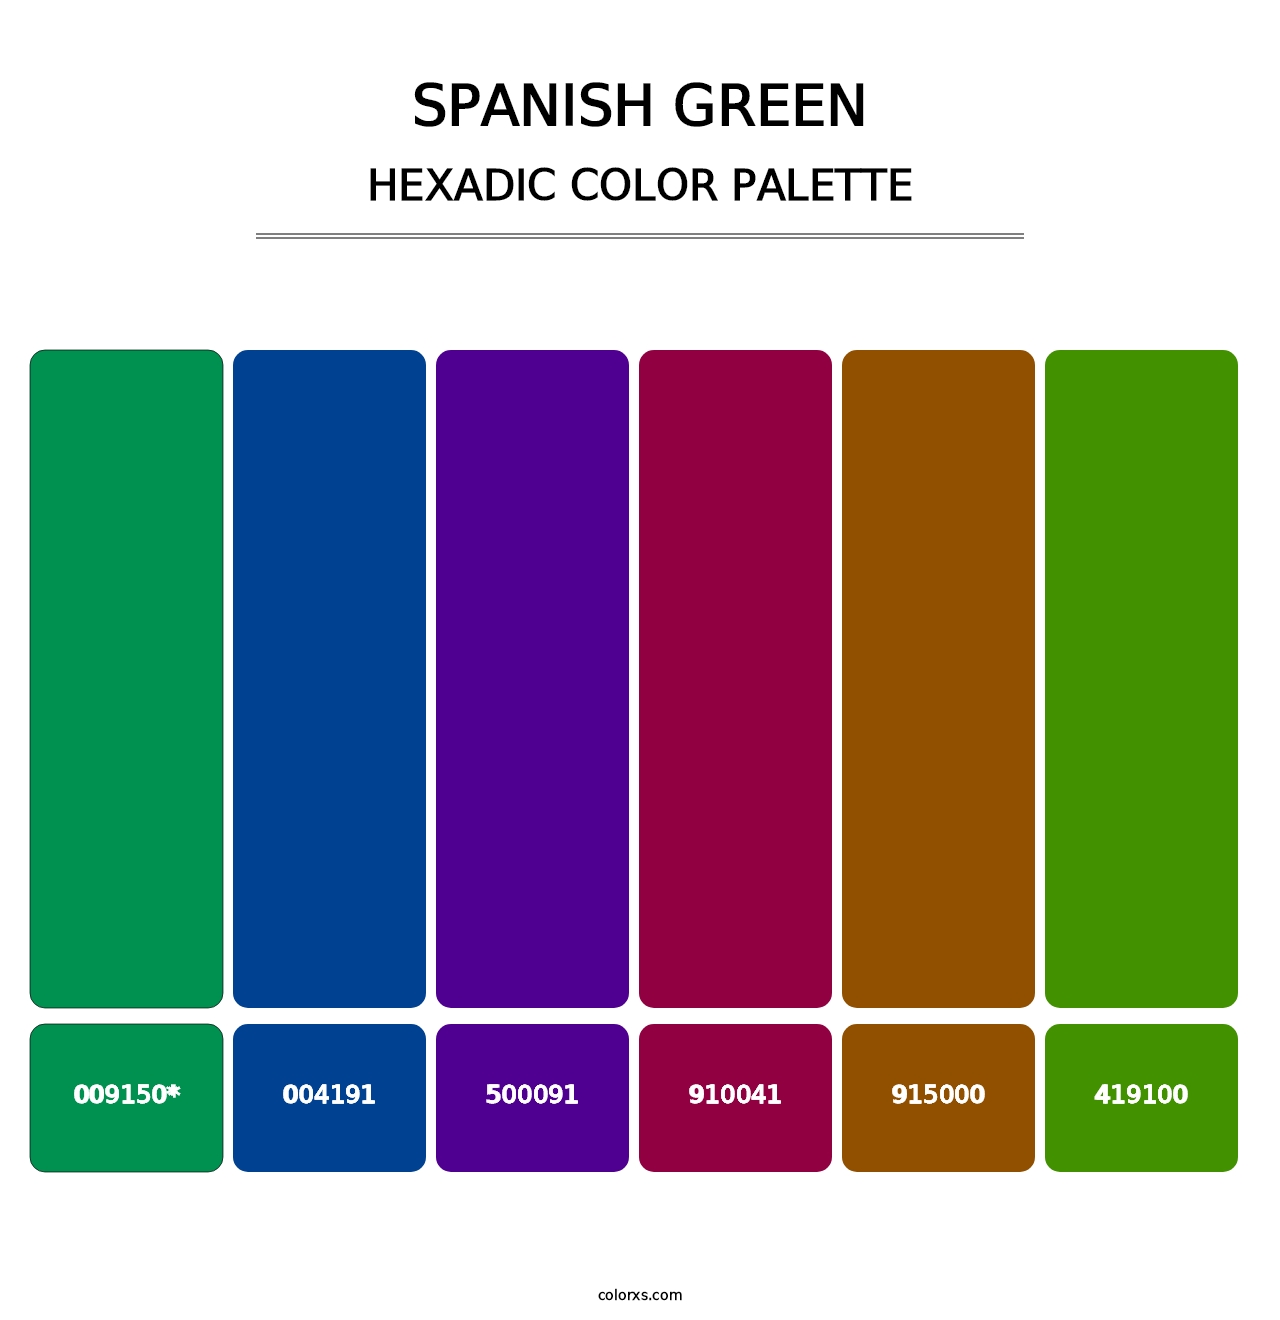 Spanish Green - Hexadic Color Palette